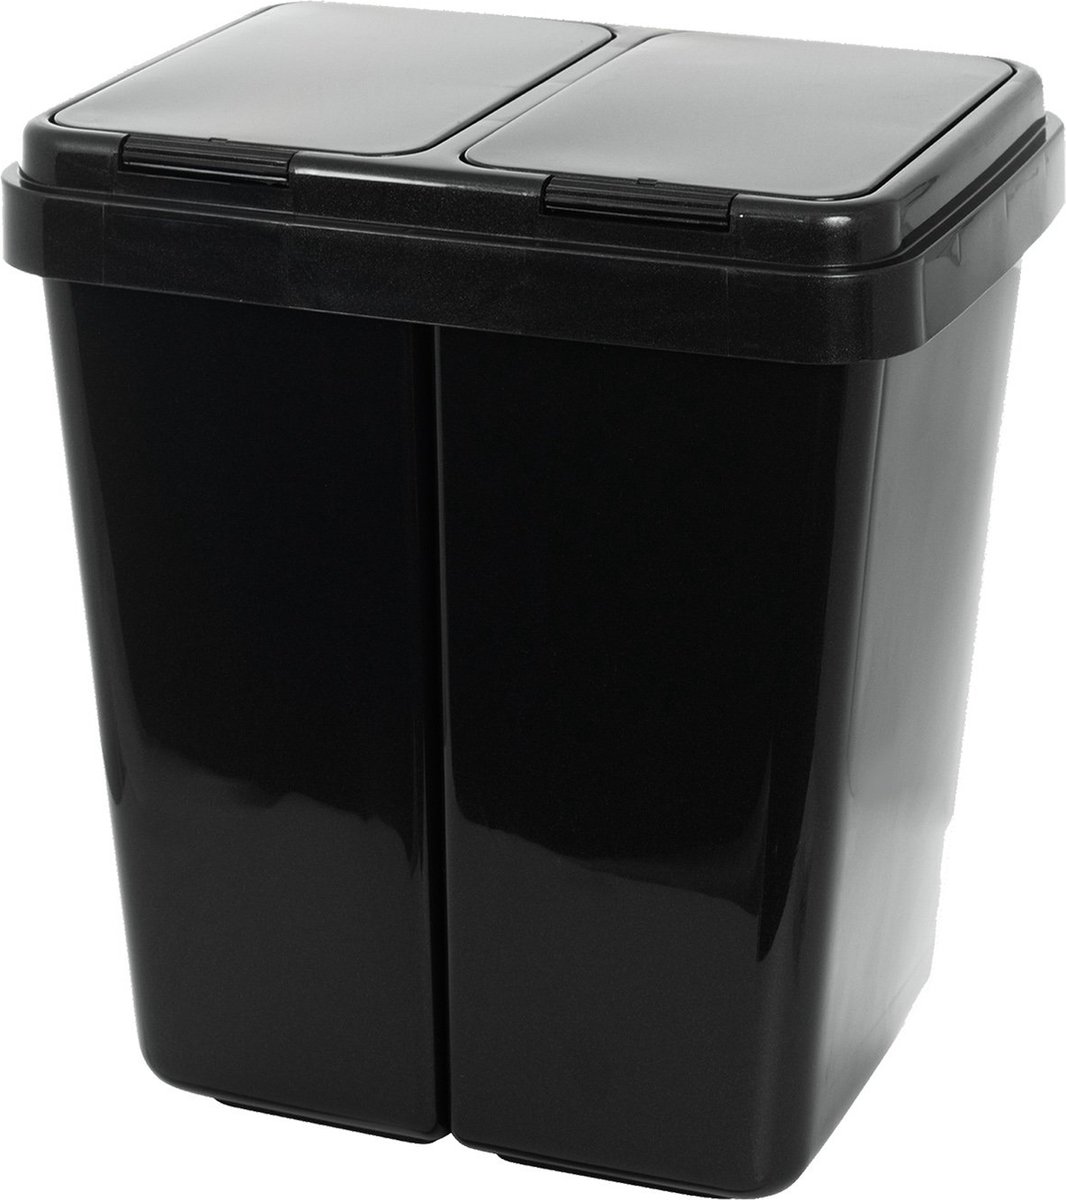 Opbergkast voor buiten - containers van kunsthars voor het sorteren van binnen en buiten / Keter Piñ plastic throw / Opslag Kast 50 Liter